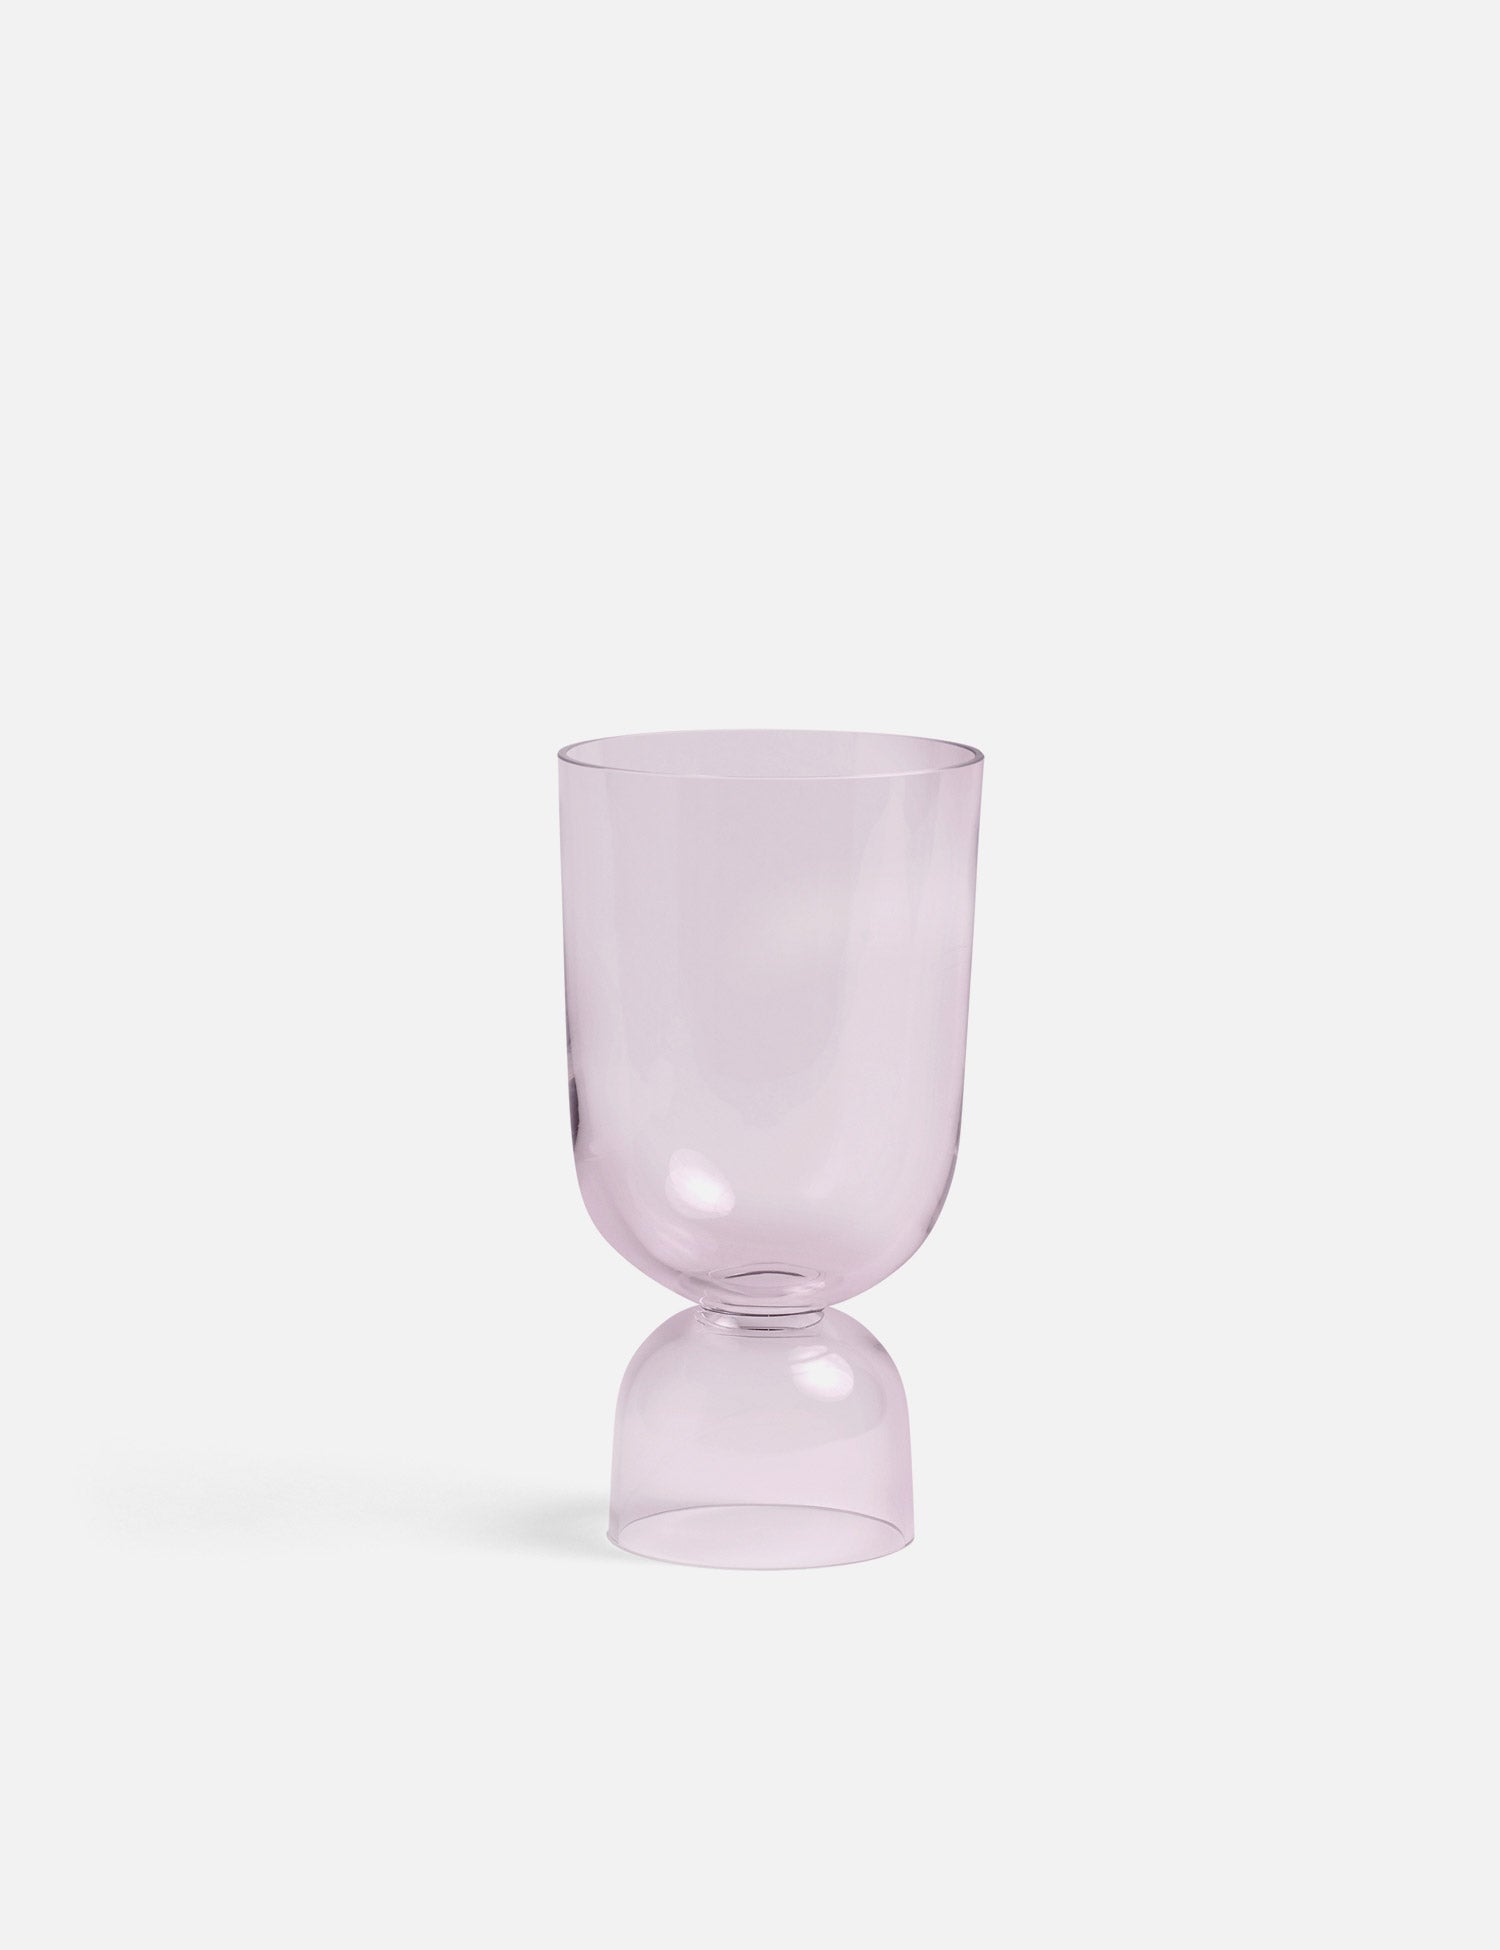 Bottoms Up Vase (Soft Pink)